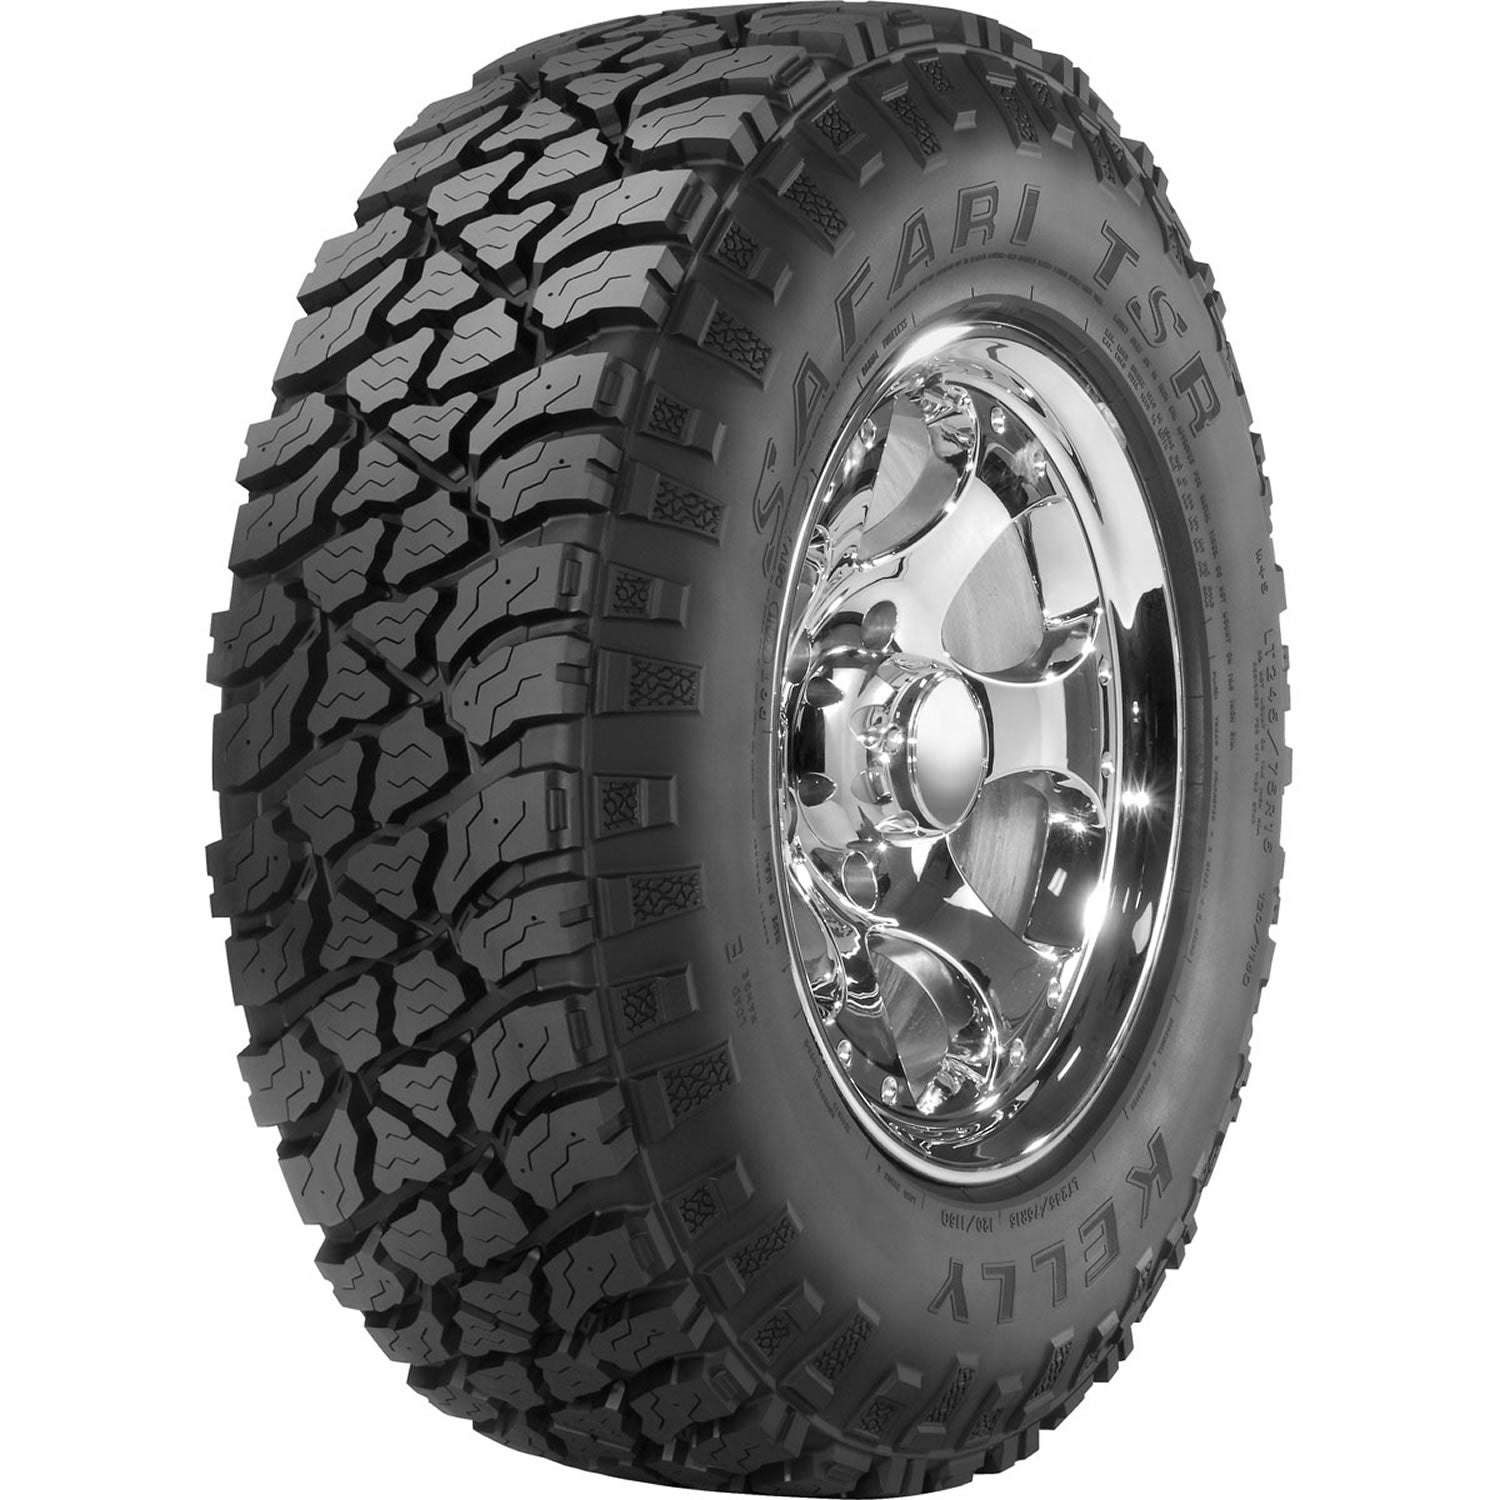 KELLY SAFARI TSR LT285/75R16 (33.1X11.3R 16) Tires